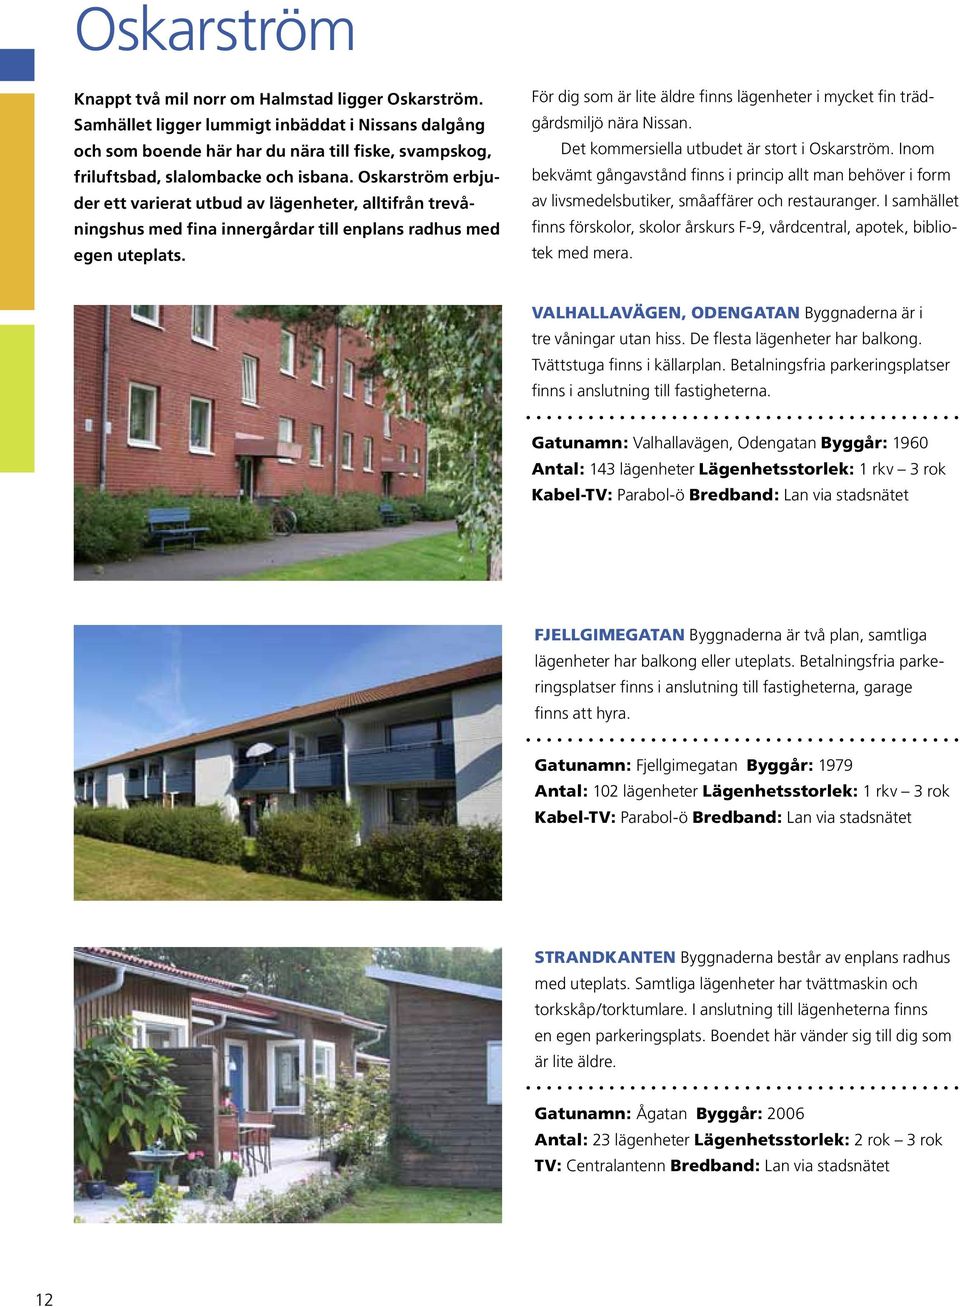 Oskarström erbjuder ett varierat utbud av lägenheter, alltifrån trevåningshus med fina innergårdar till enplans radhus med egen uteplats.